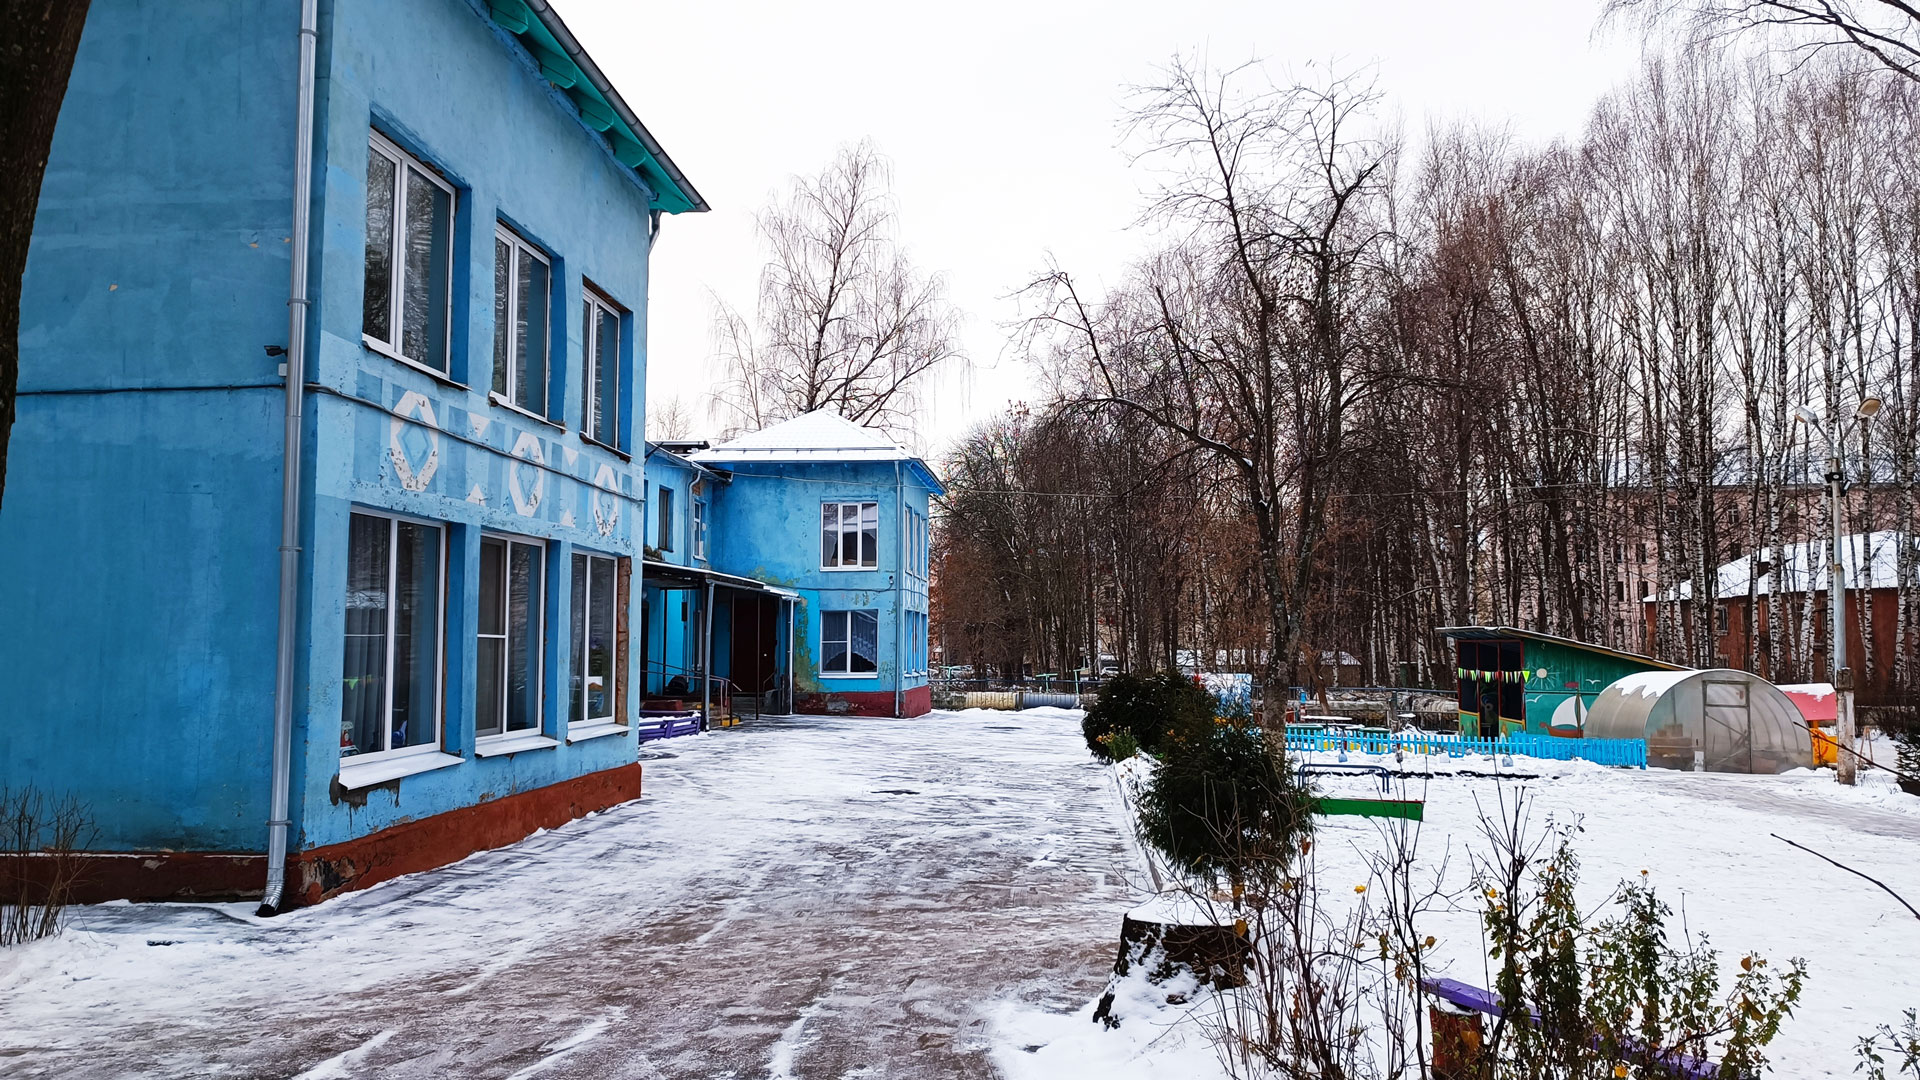 Детский сад 176 Ярославль: общий вид здания и территории.